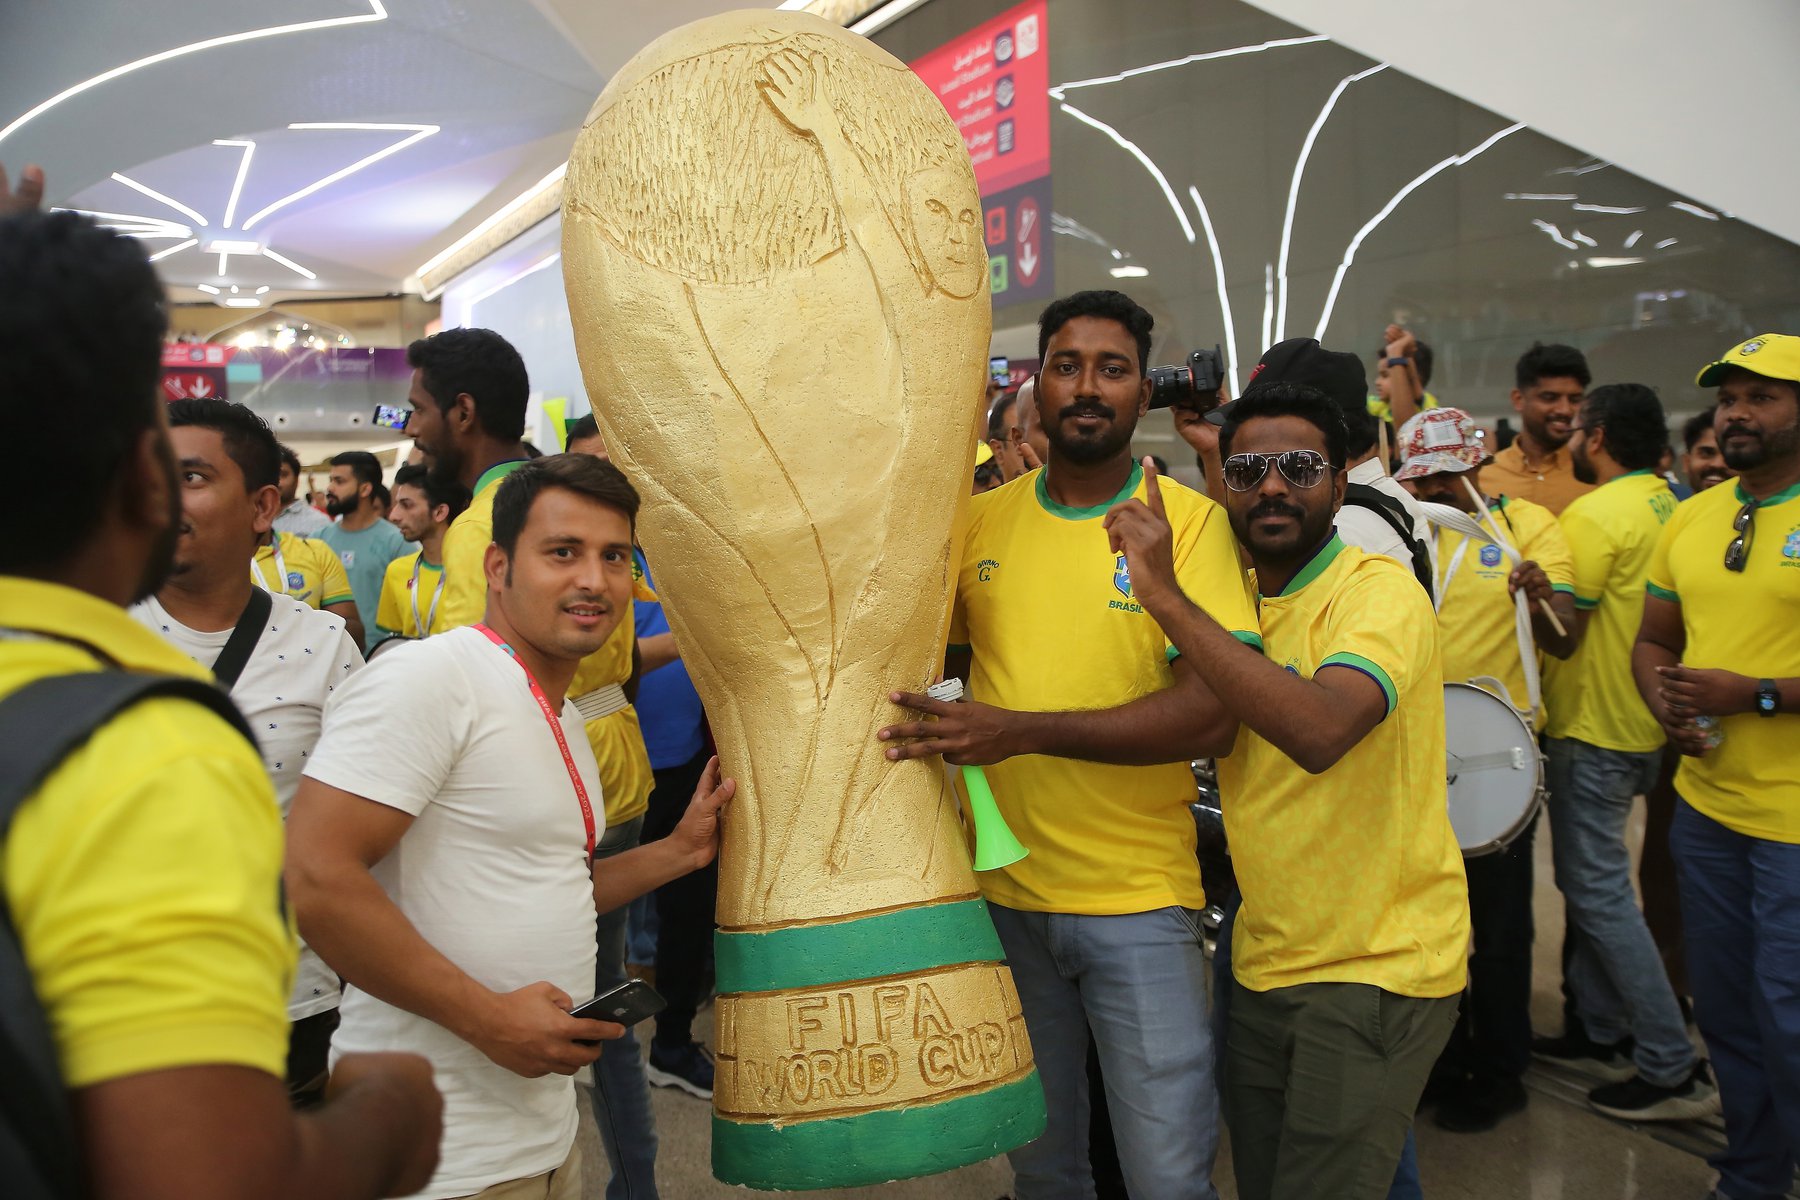 Κατάρ: Ύποπτη η ομοιότητα των οπαδών του Παγκόσμιου Κυπέλλου – Αναφορές για πληρωμένους «φιλάθλους»